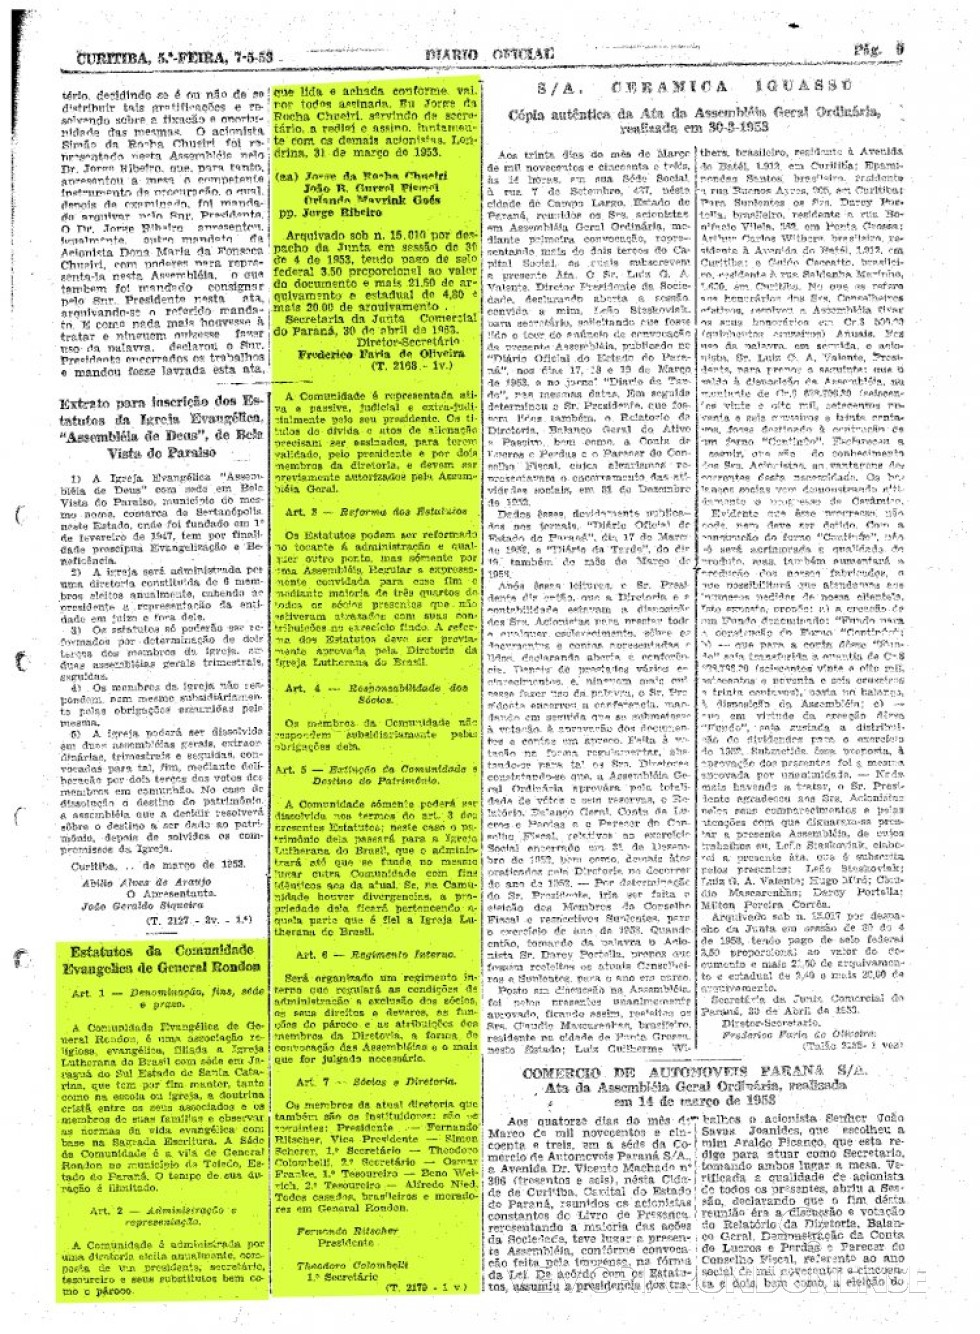 || Publicação do extrato dos Estatutos da Comunidade Evangélica Martin Luther, no Diário Oficial do Estado, em maio de 1953.
Imagem:  Acervo Arquivo Público do Paraná - FOTO 2  - 